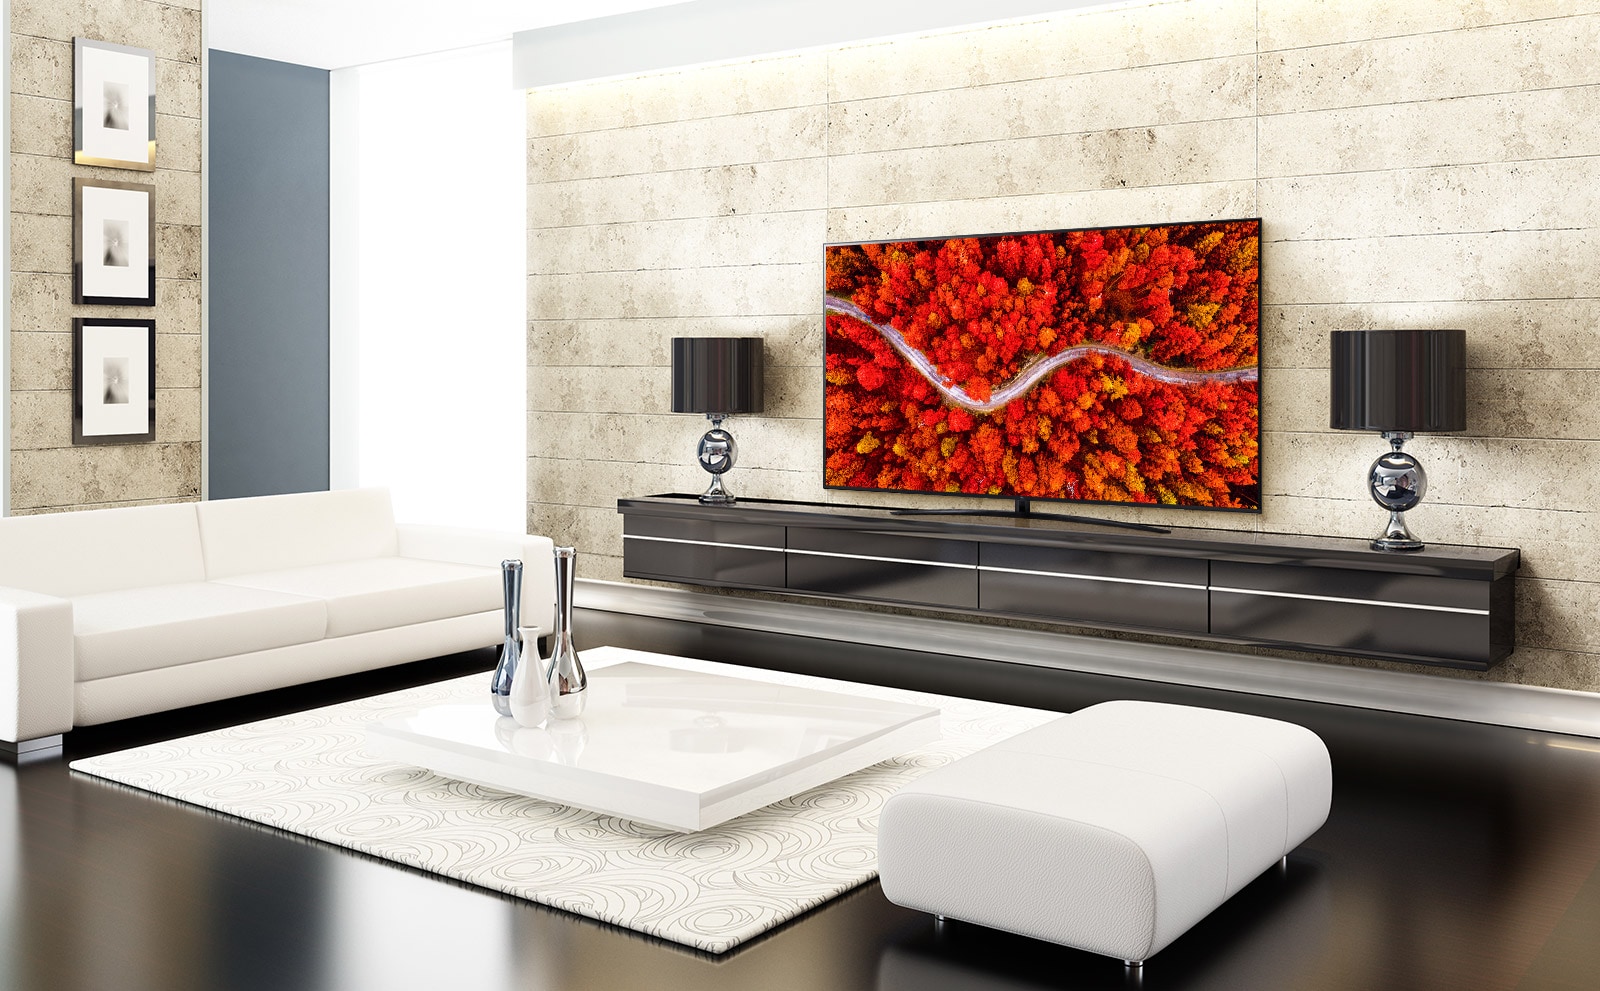 غرفة جلوس فاخرة مع تلفزيون يعرض منظر جوي للأخشاب باللون الأحمر.